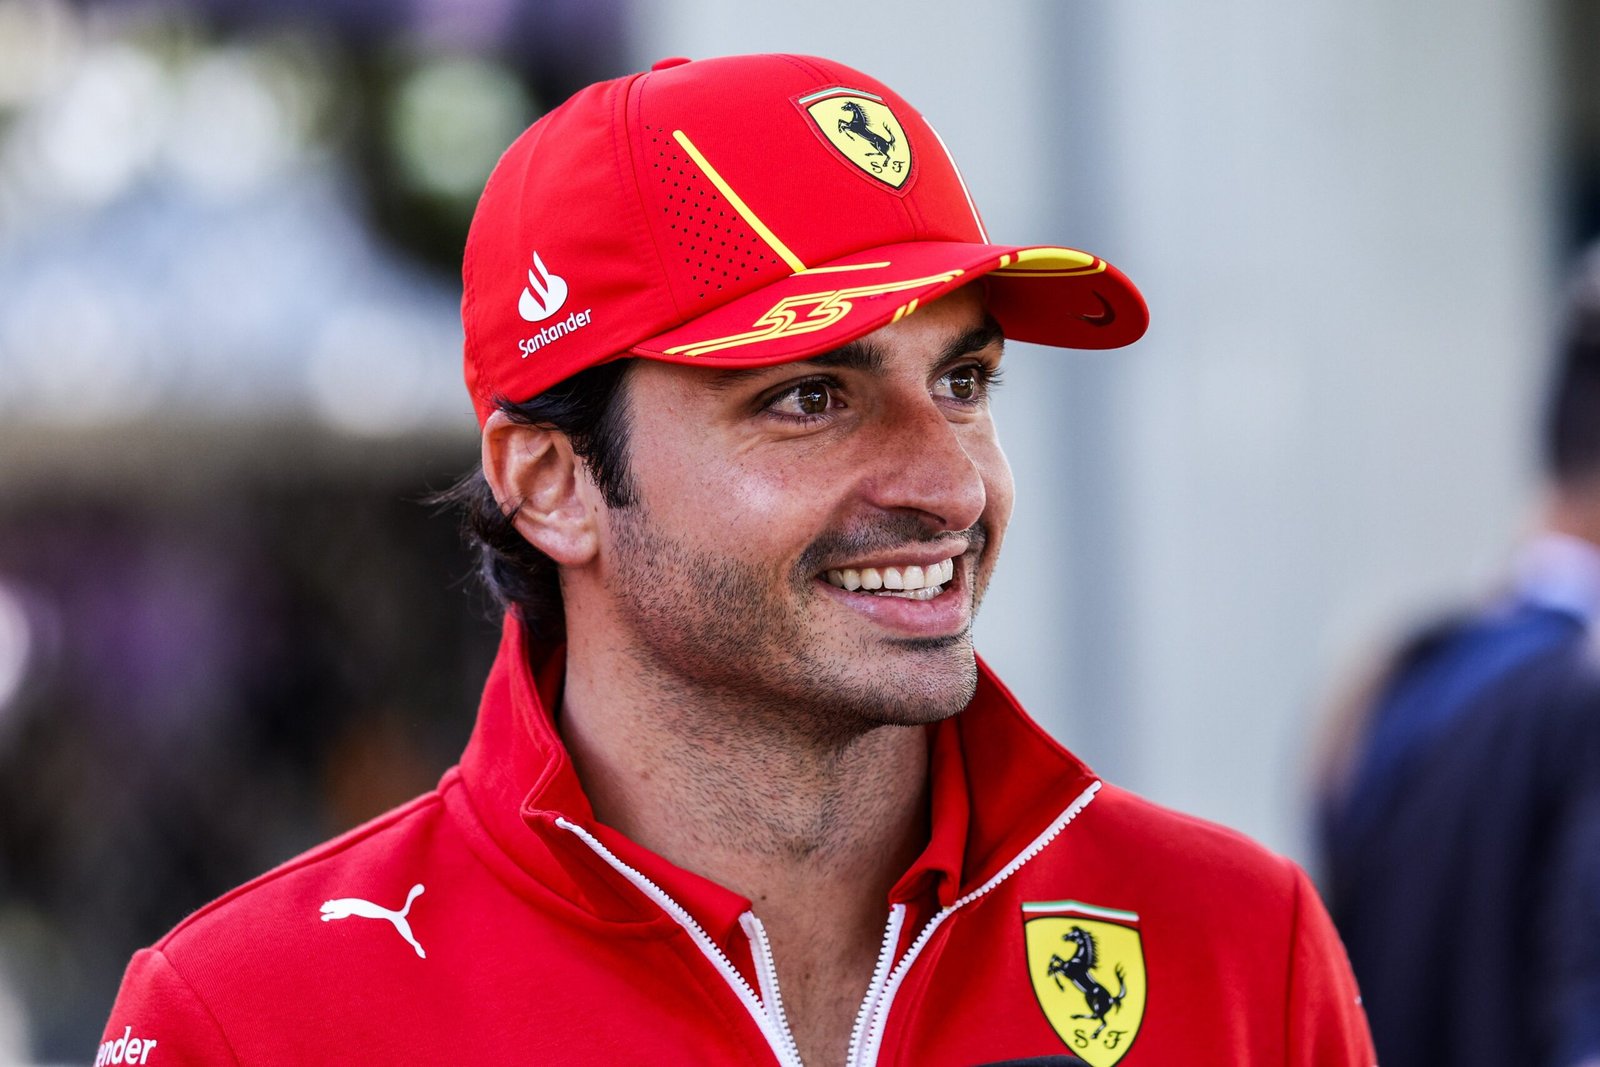 Ferrari confirma retorno de Carlos Sainz, mas piloto evidencia “não estar 100%”